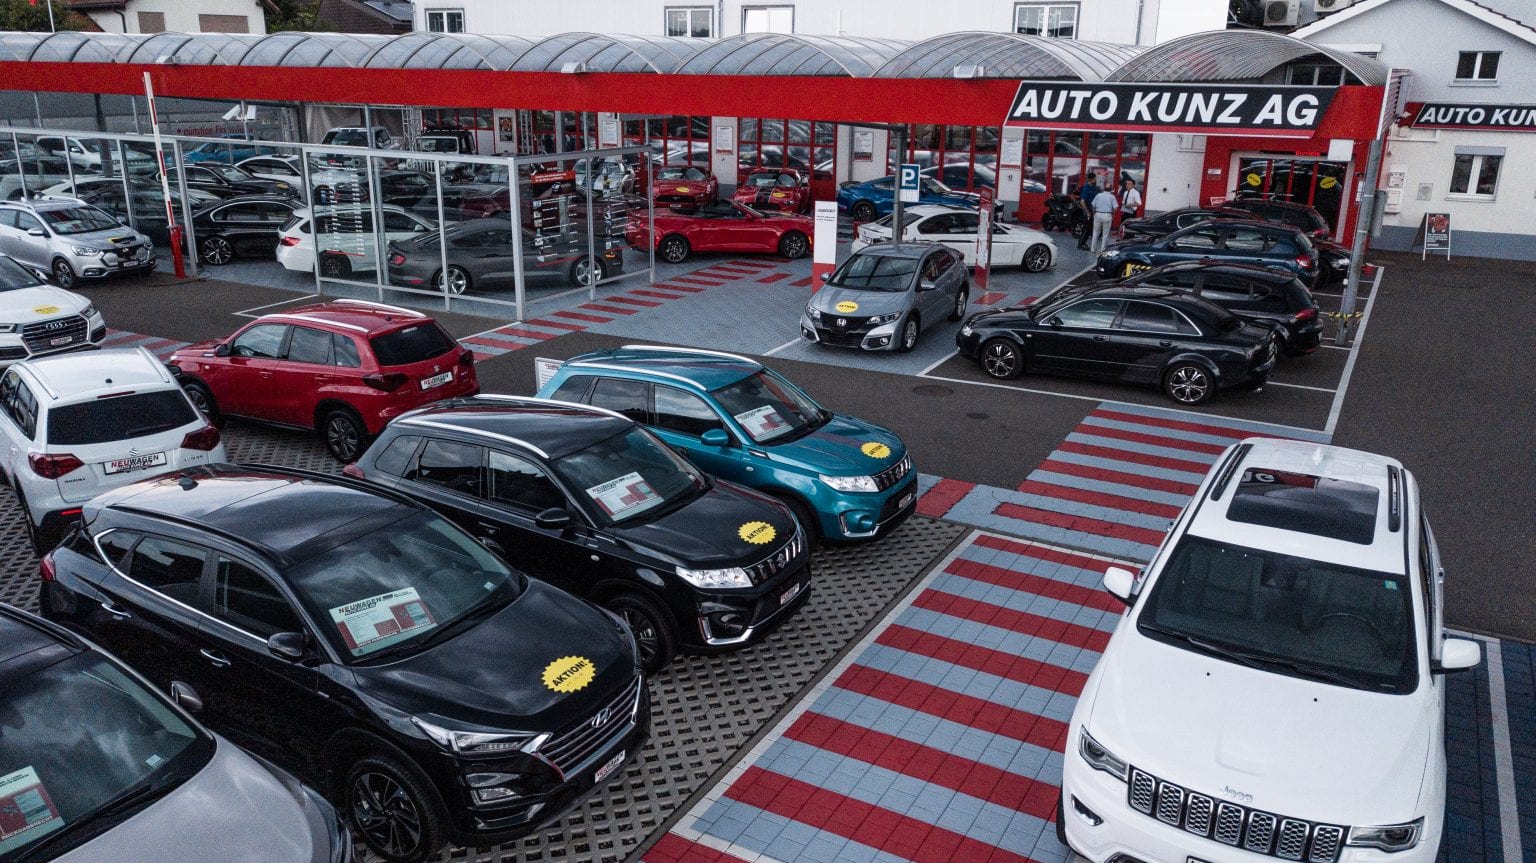 Occasion Auto Garage, Luzern